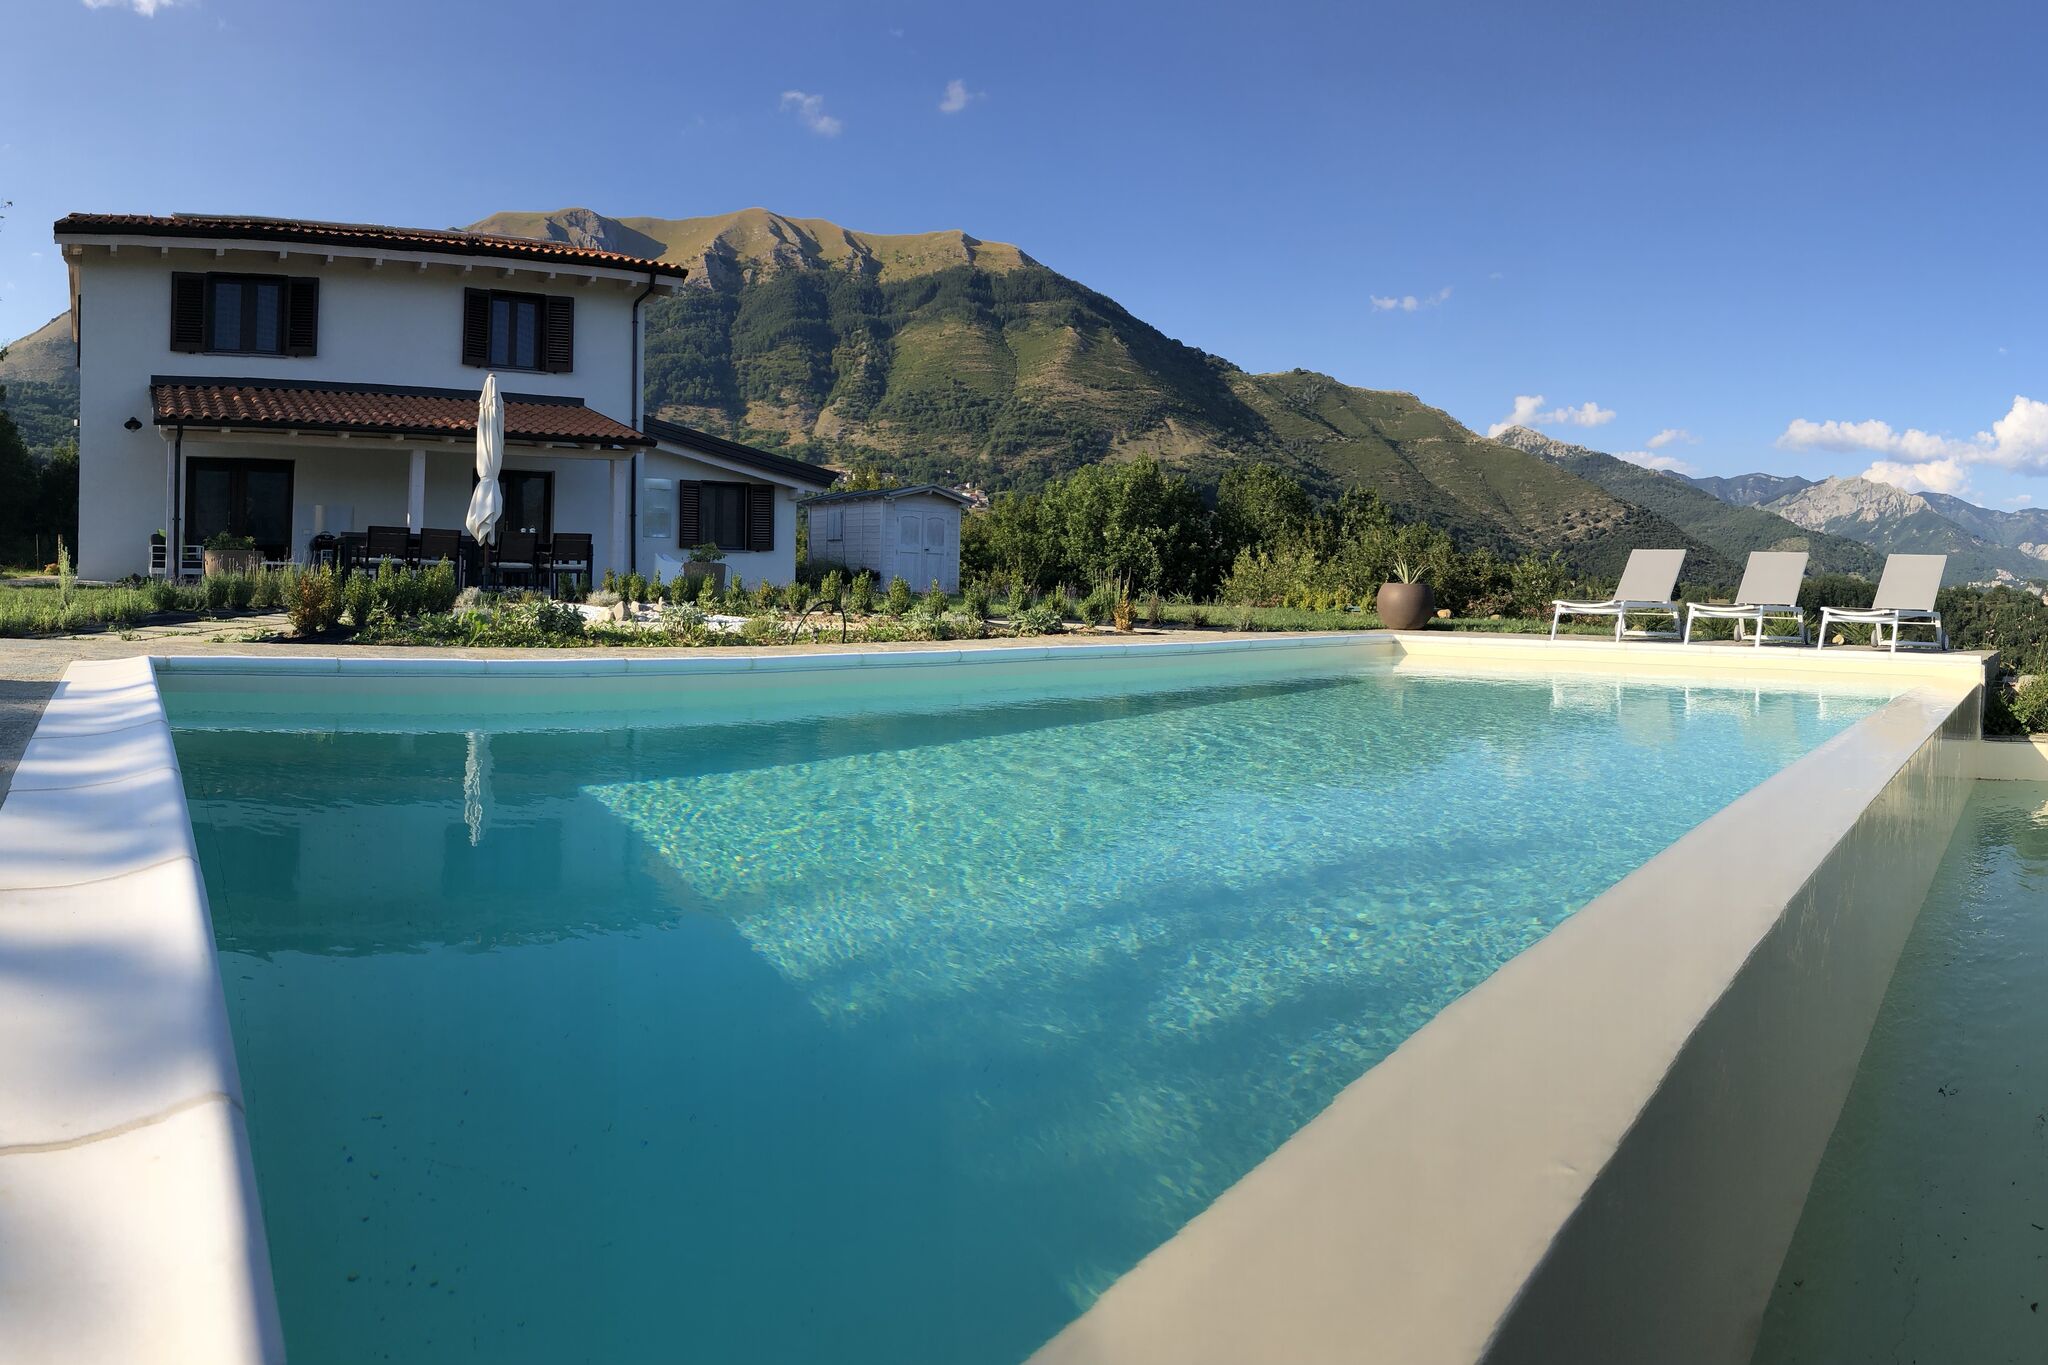 Panoramisch huis met privézwembad in de groene heuvels van de Garfagnana